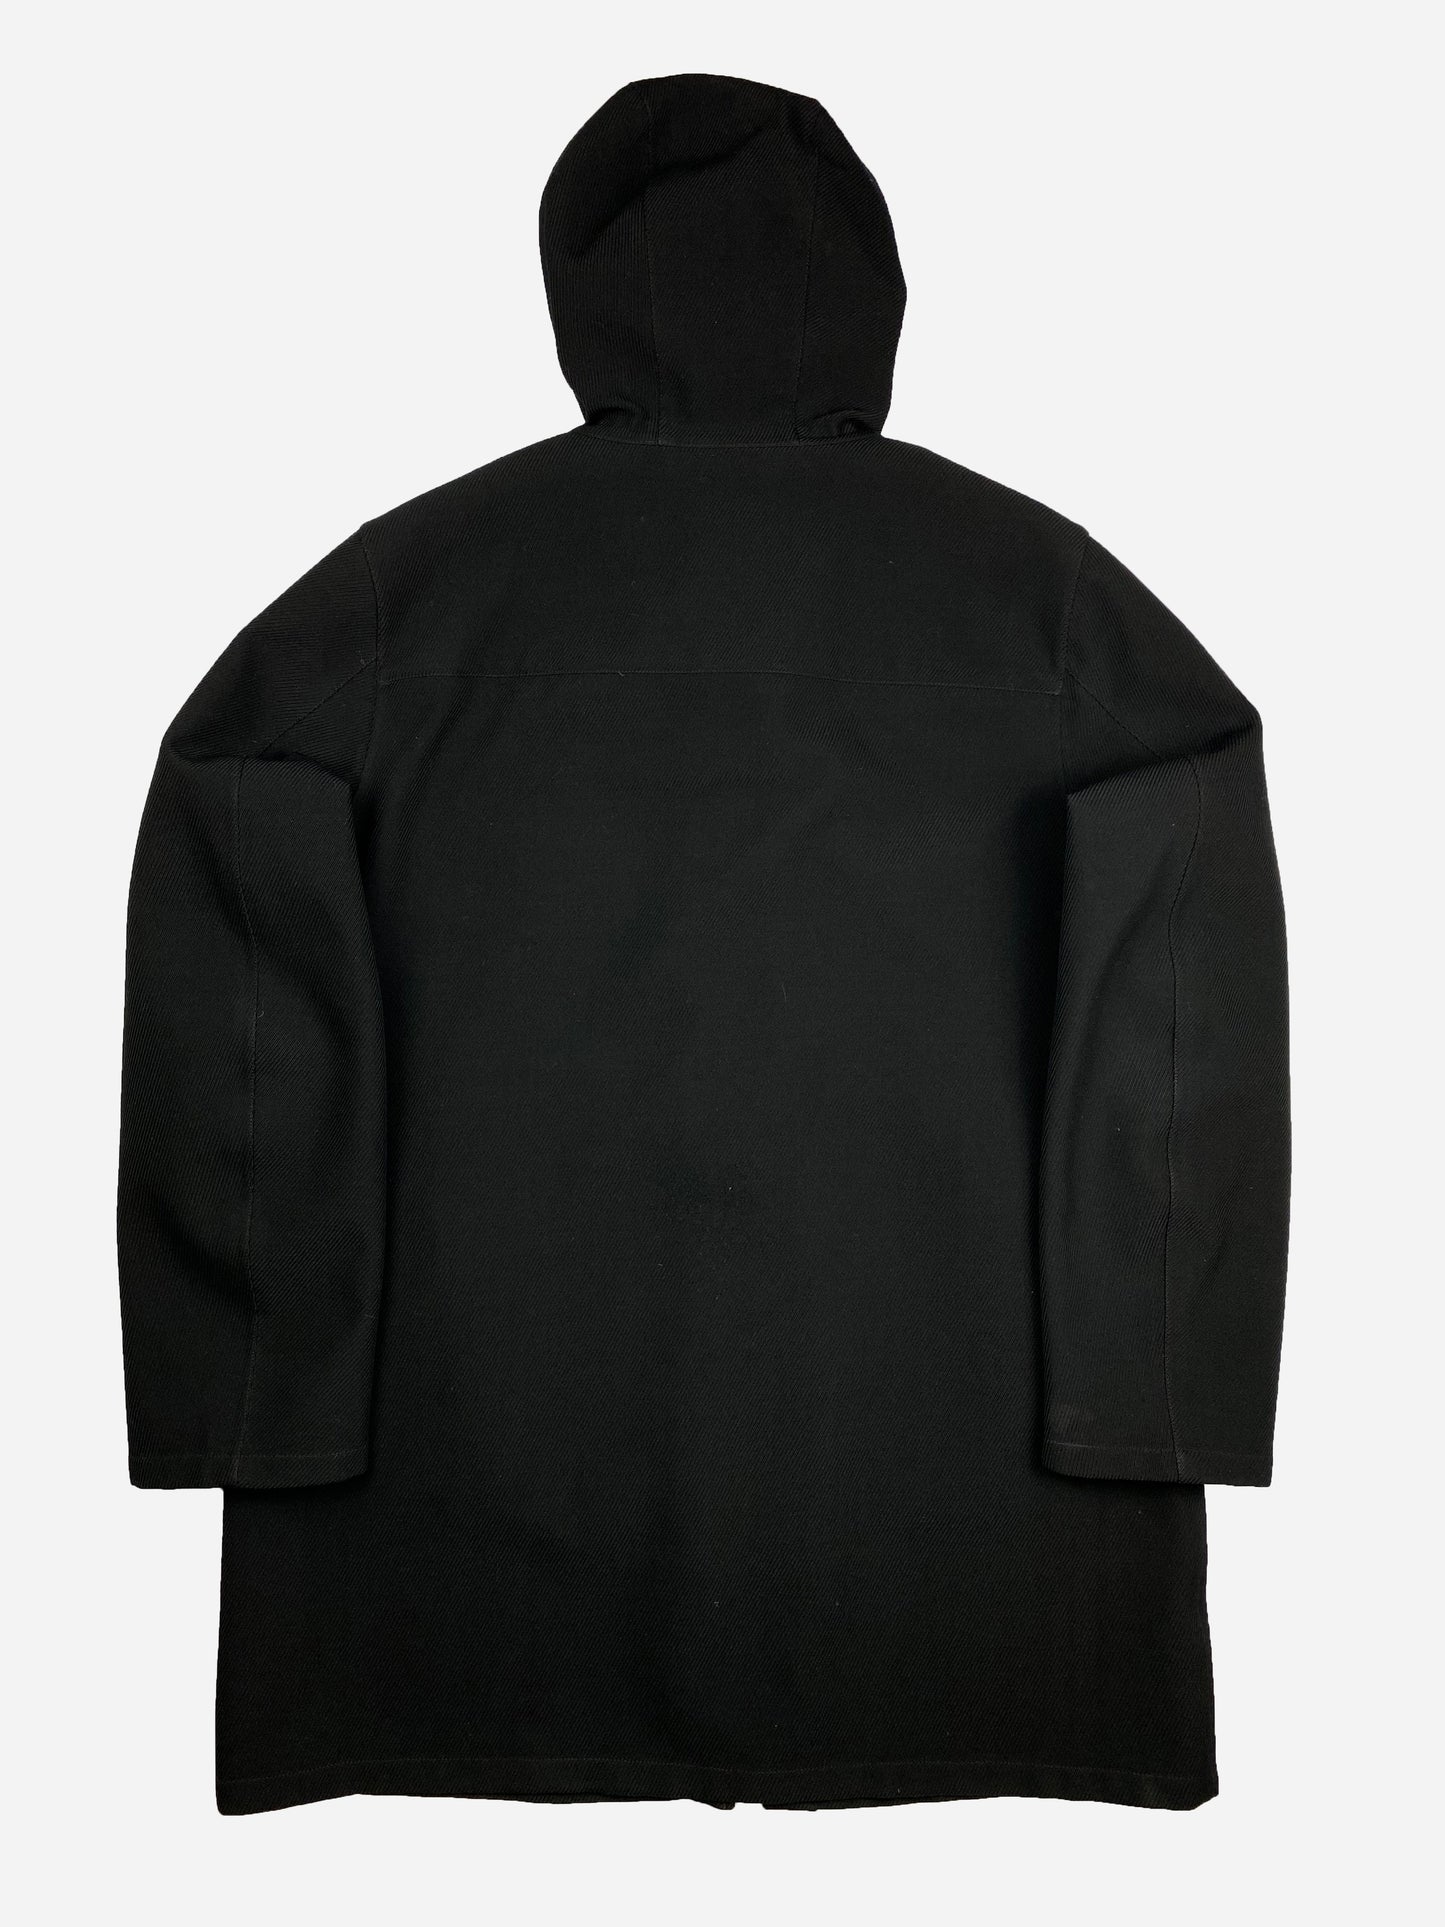 Prada - Men’s Hooded Wool Jacket - (Black)